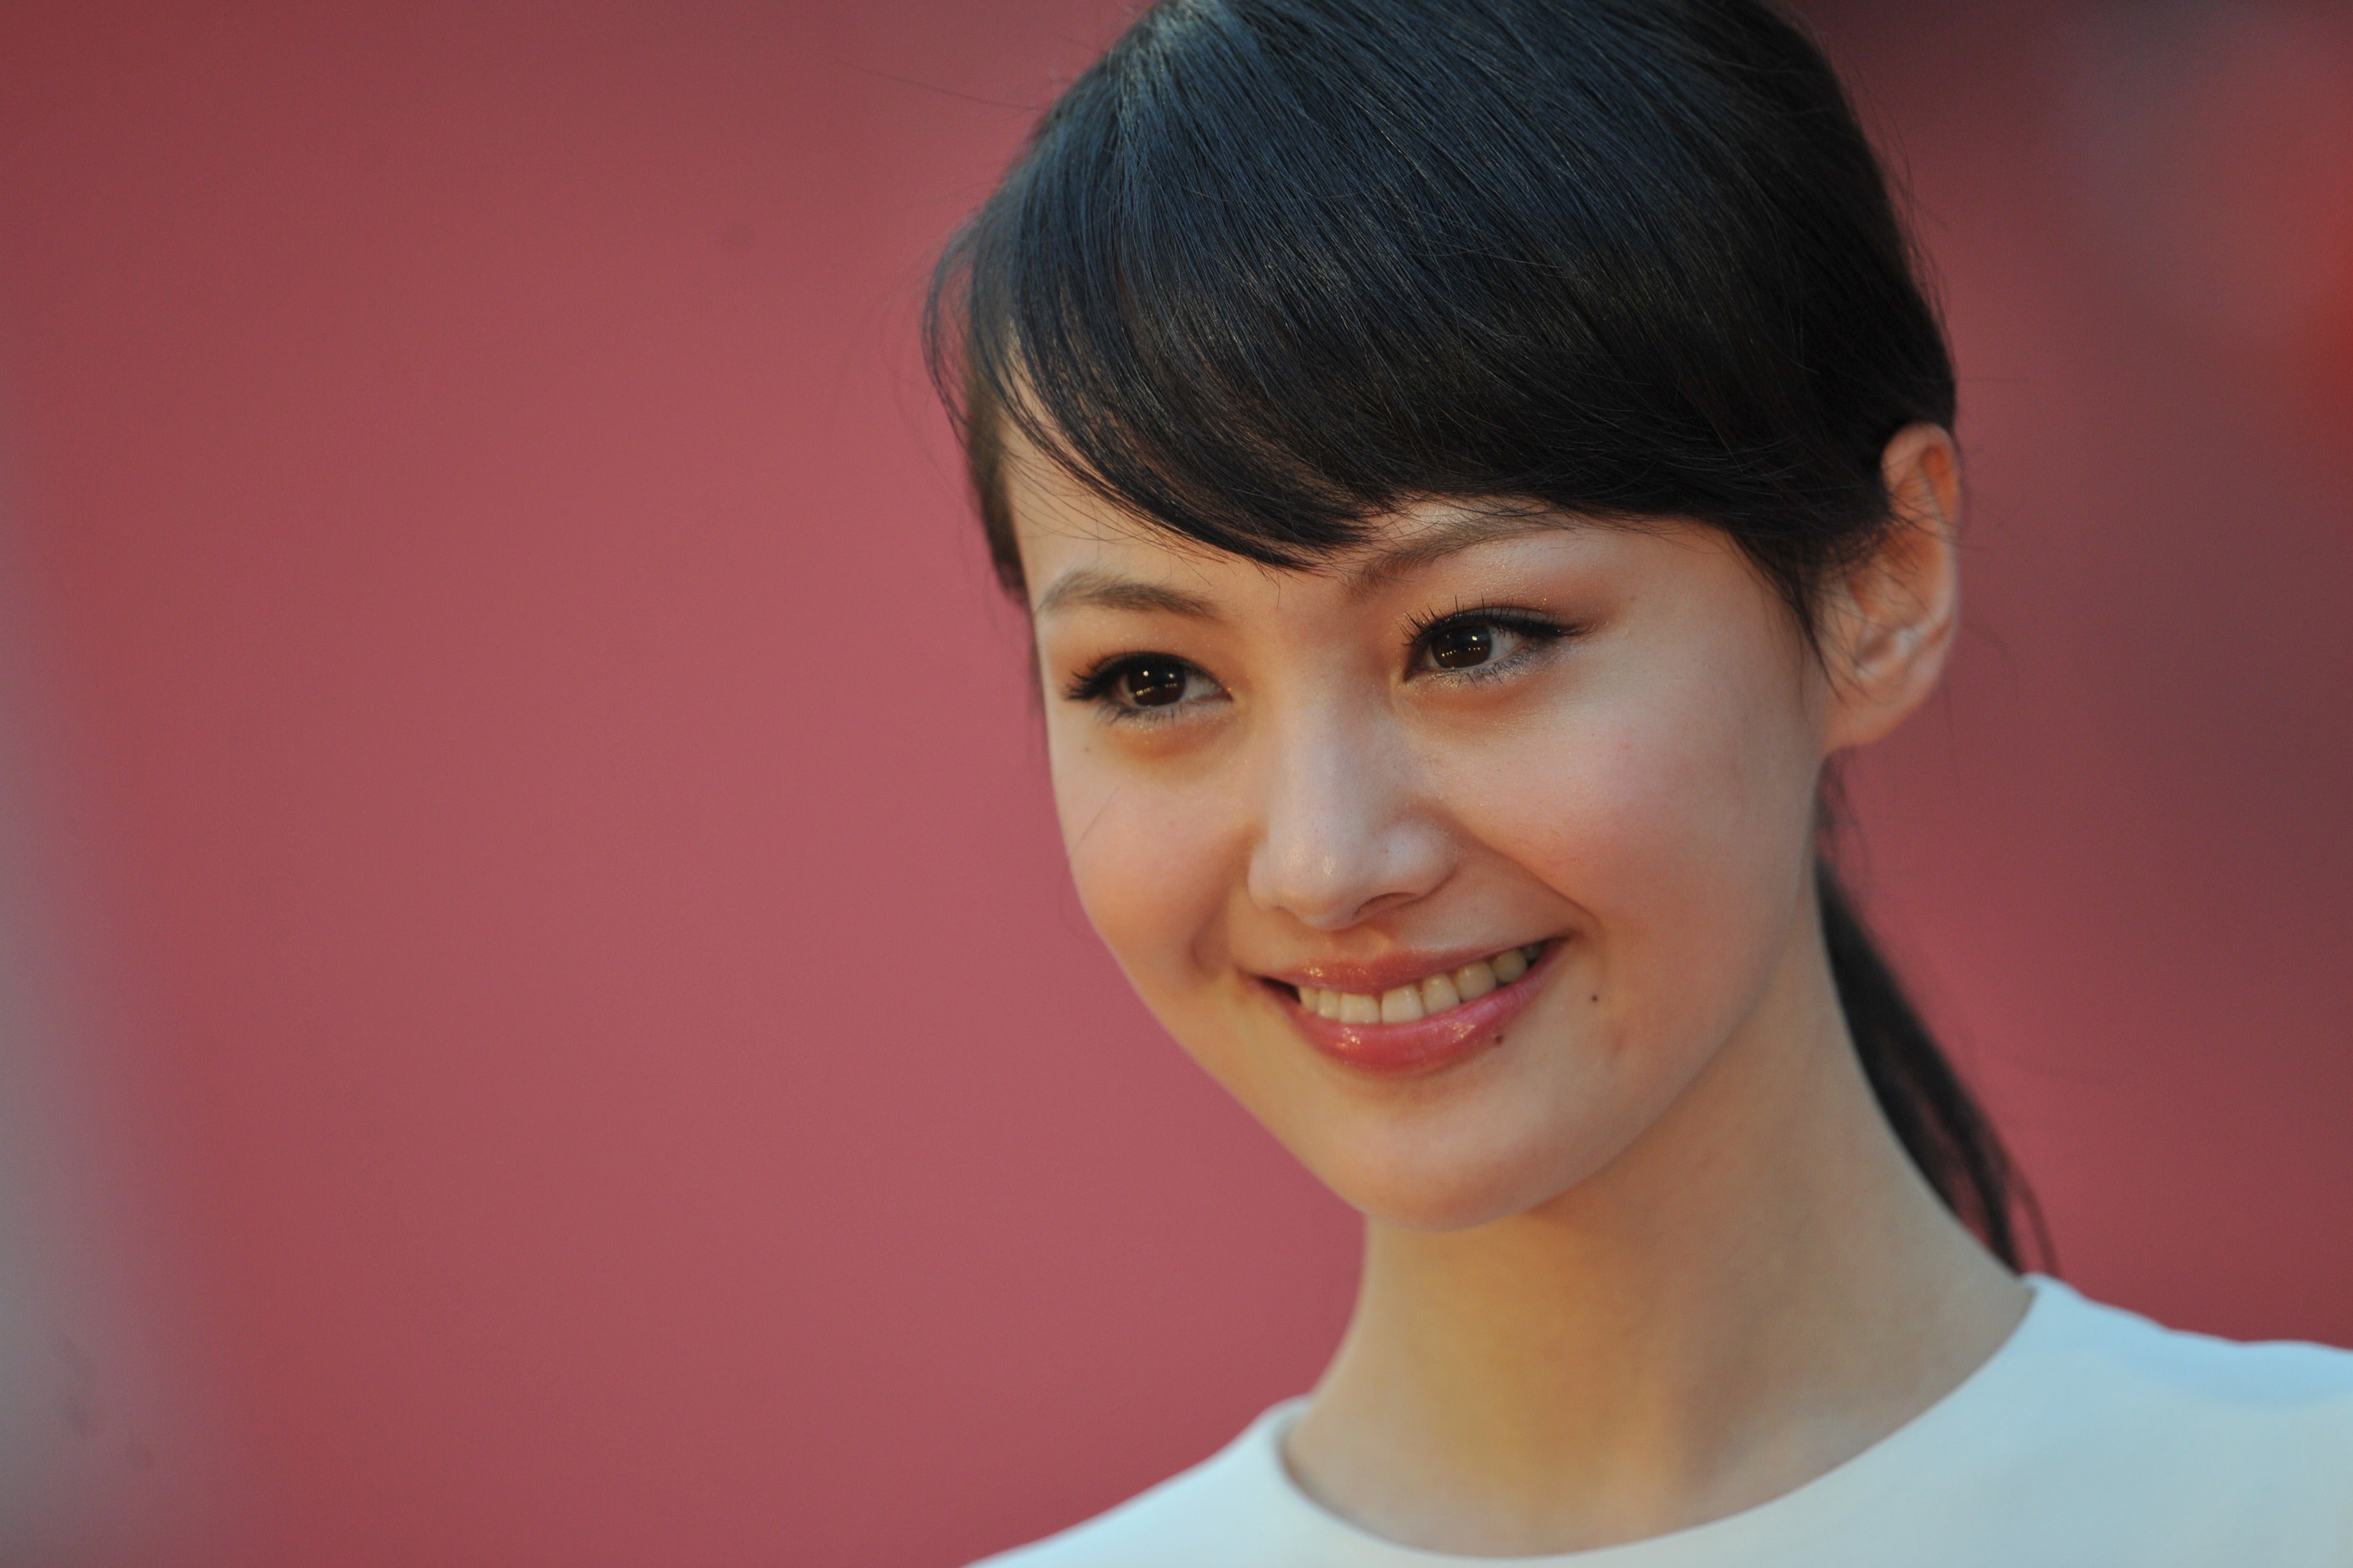 File image: Zheng Shuang at the 31st Hong Kong Film Awards in 2012